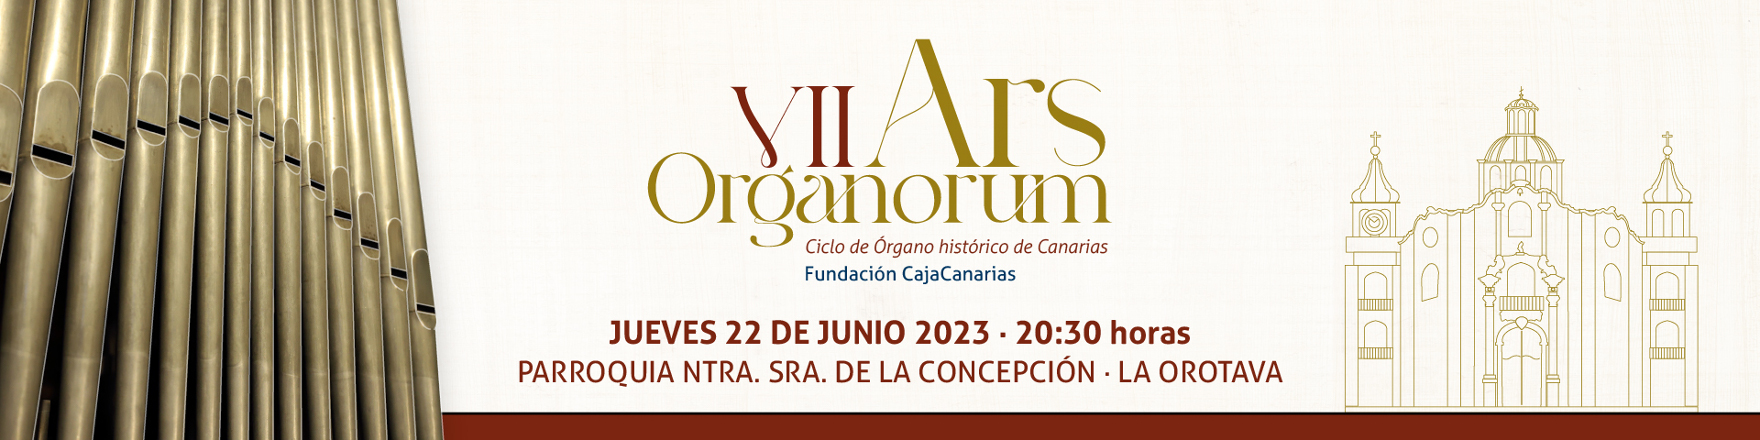 Conciertos - Ars Organorum - La Orotava 22 junio